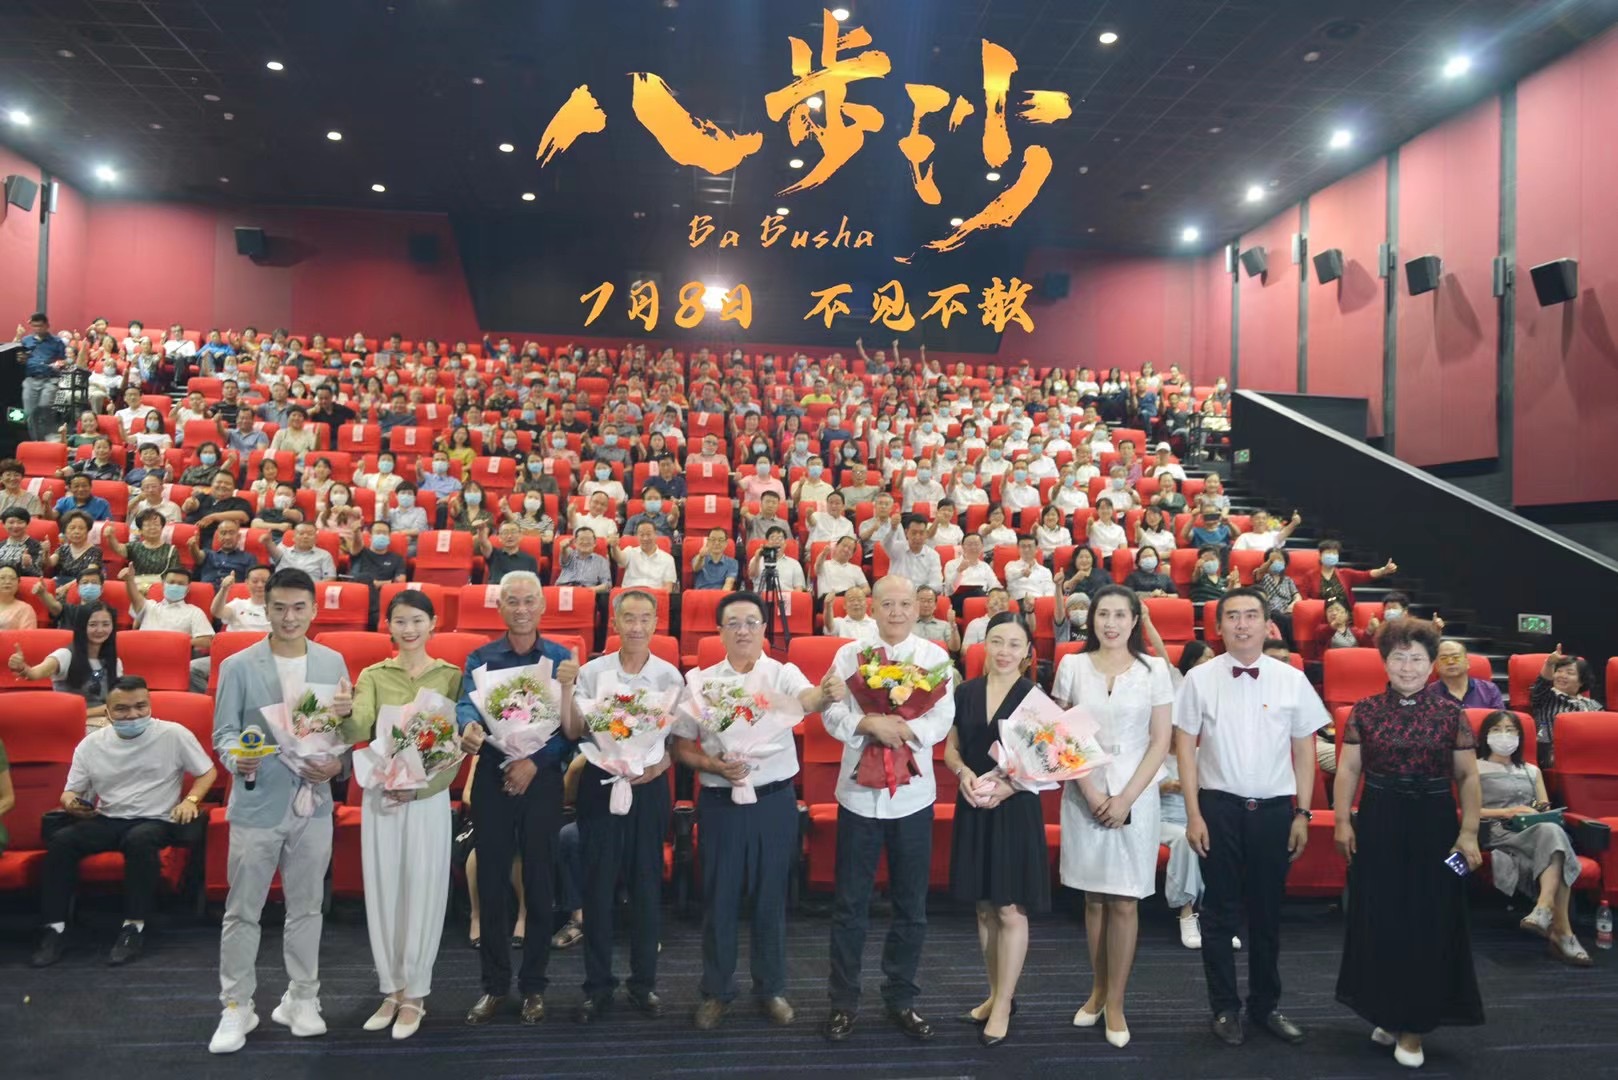 新人演员张珂铭参演电影《八步沙》获第34届中国金鸡奖提名